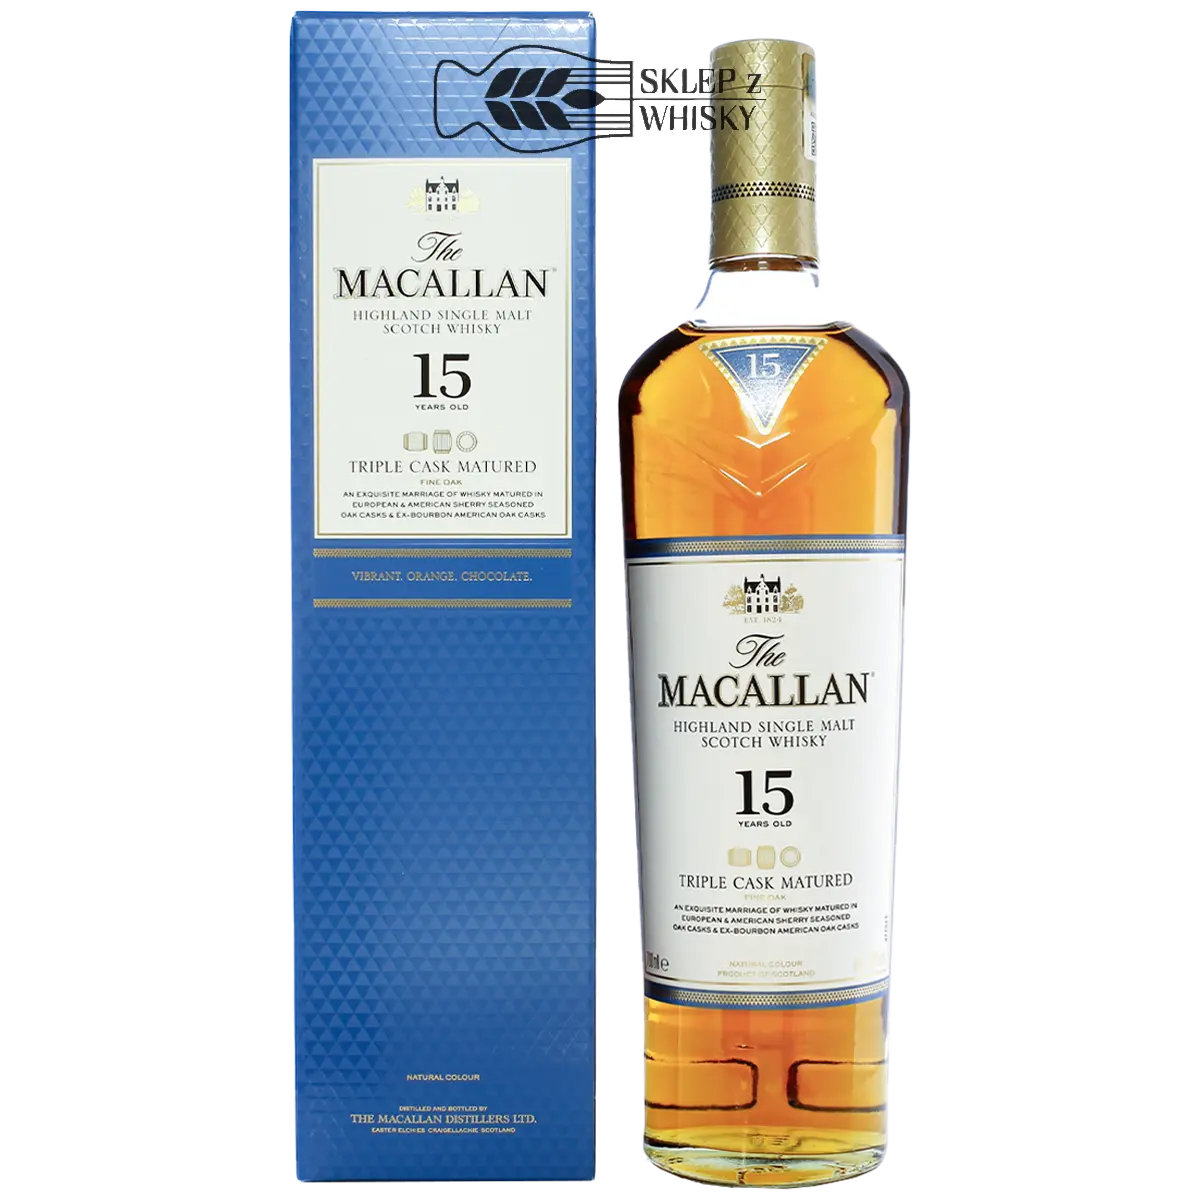 Macallan 15 YO Triple Cask Matured - szkocka whisky single malt z regionu Speyside, 700 ml, w pudełku